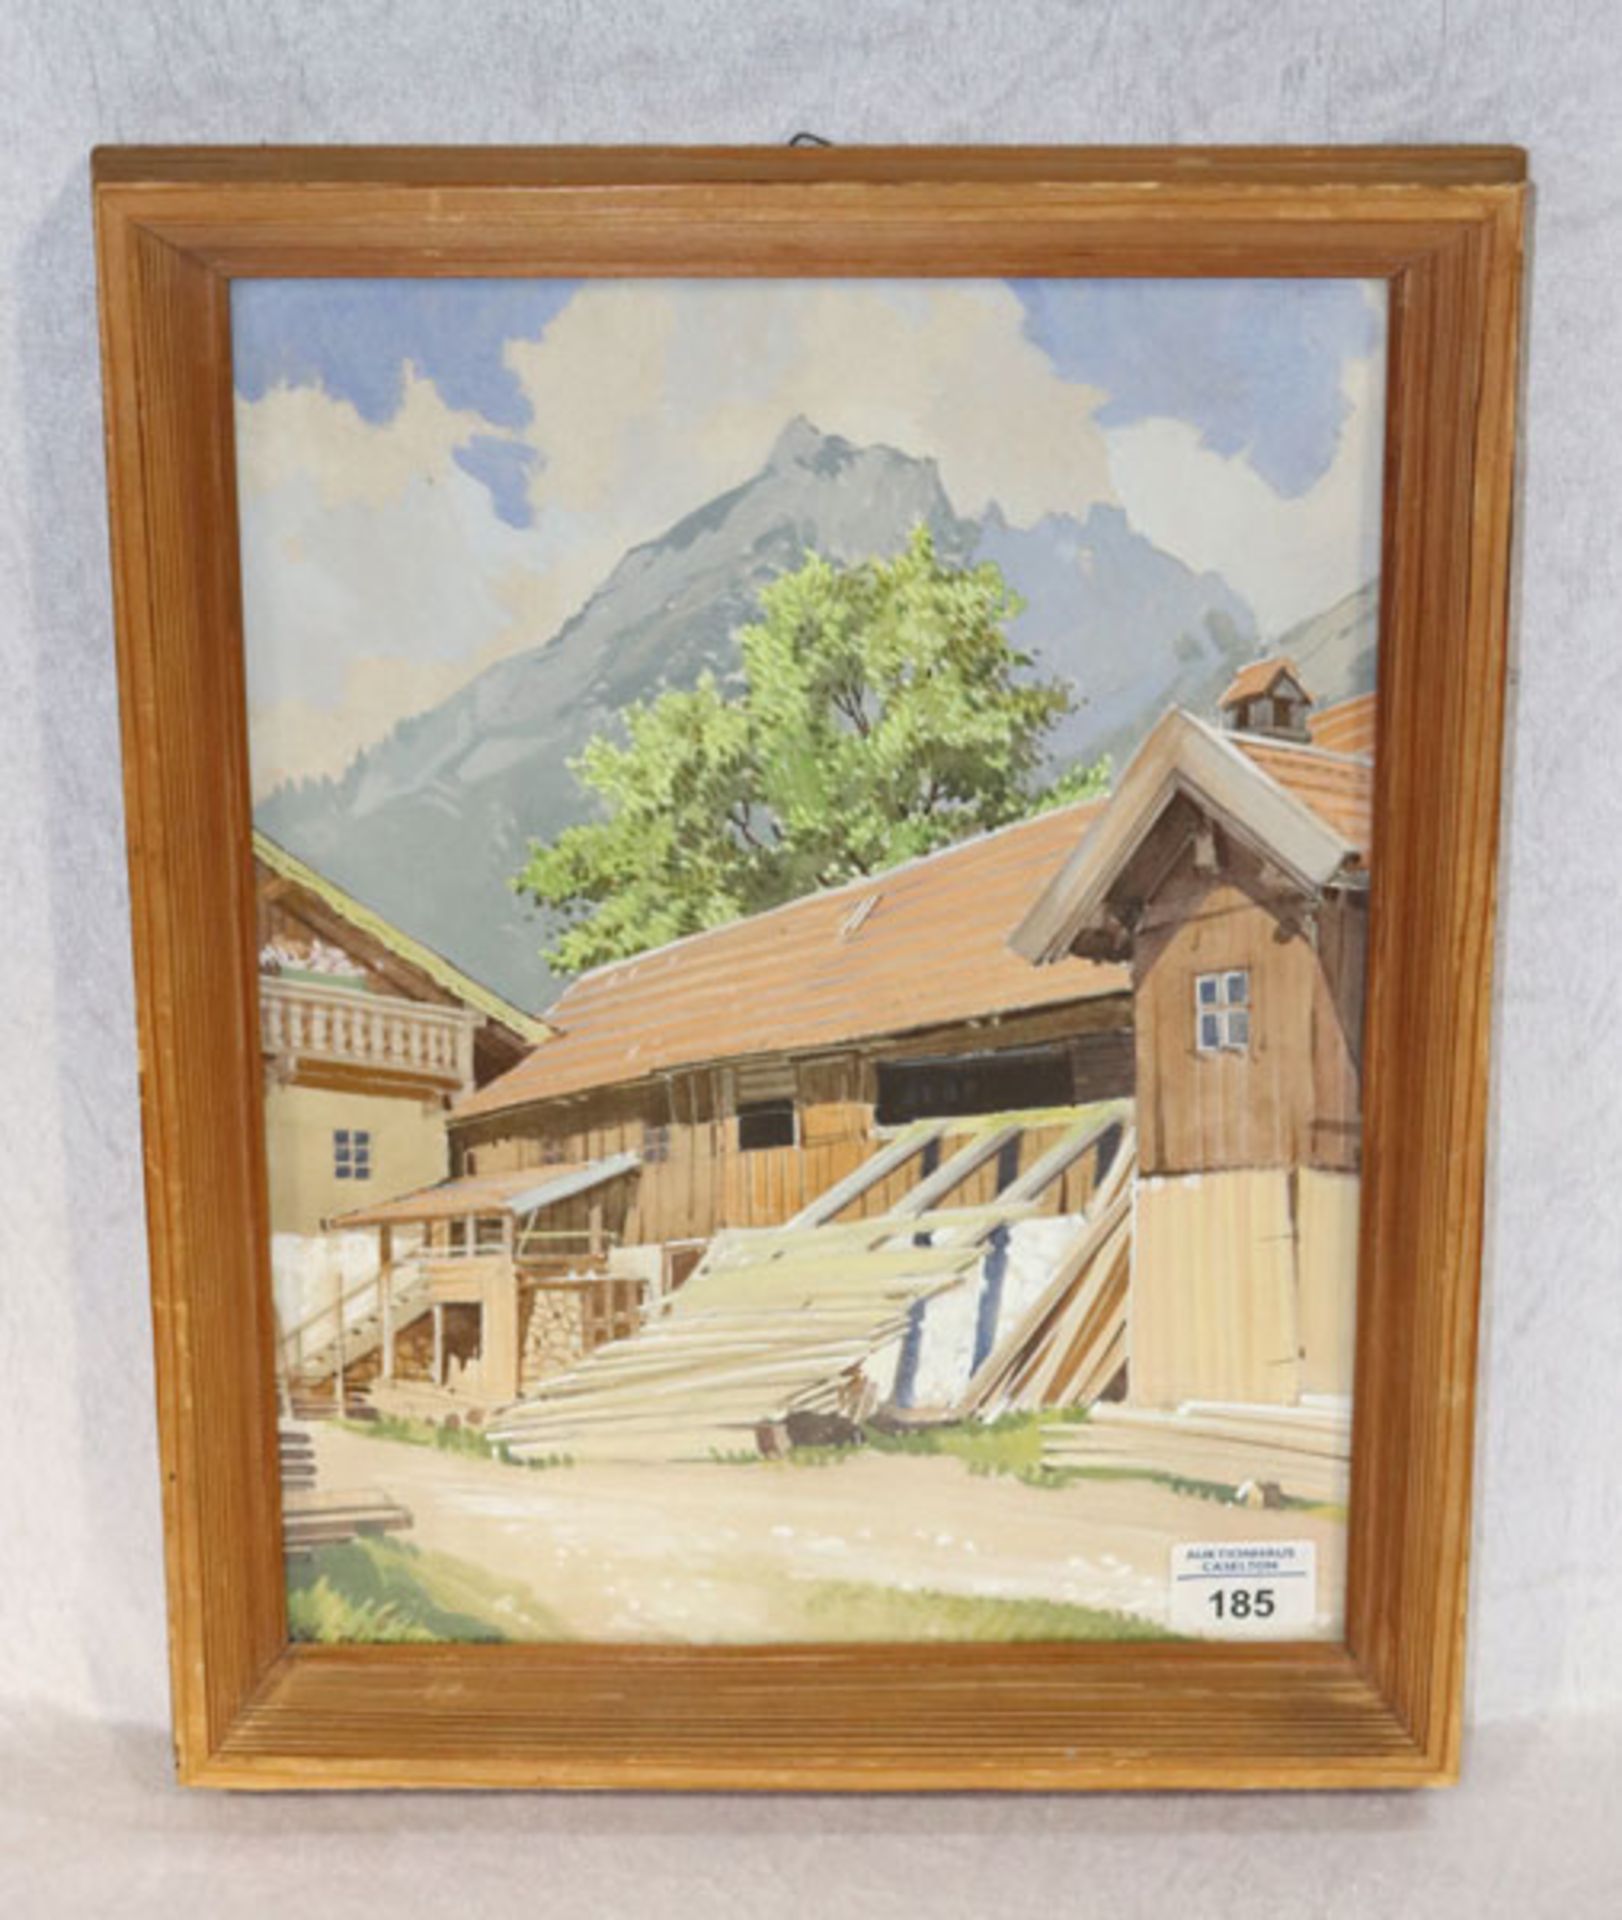 Aquarell 'Dillis-Mühle in Garmisch', (jetzt Hotel Obermühle) signiert R. (Rudolf) Klöden, * 1892